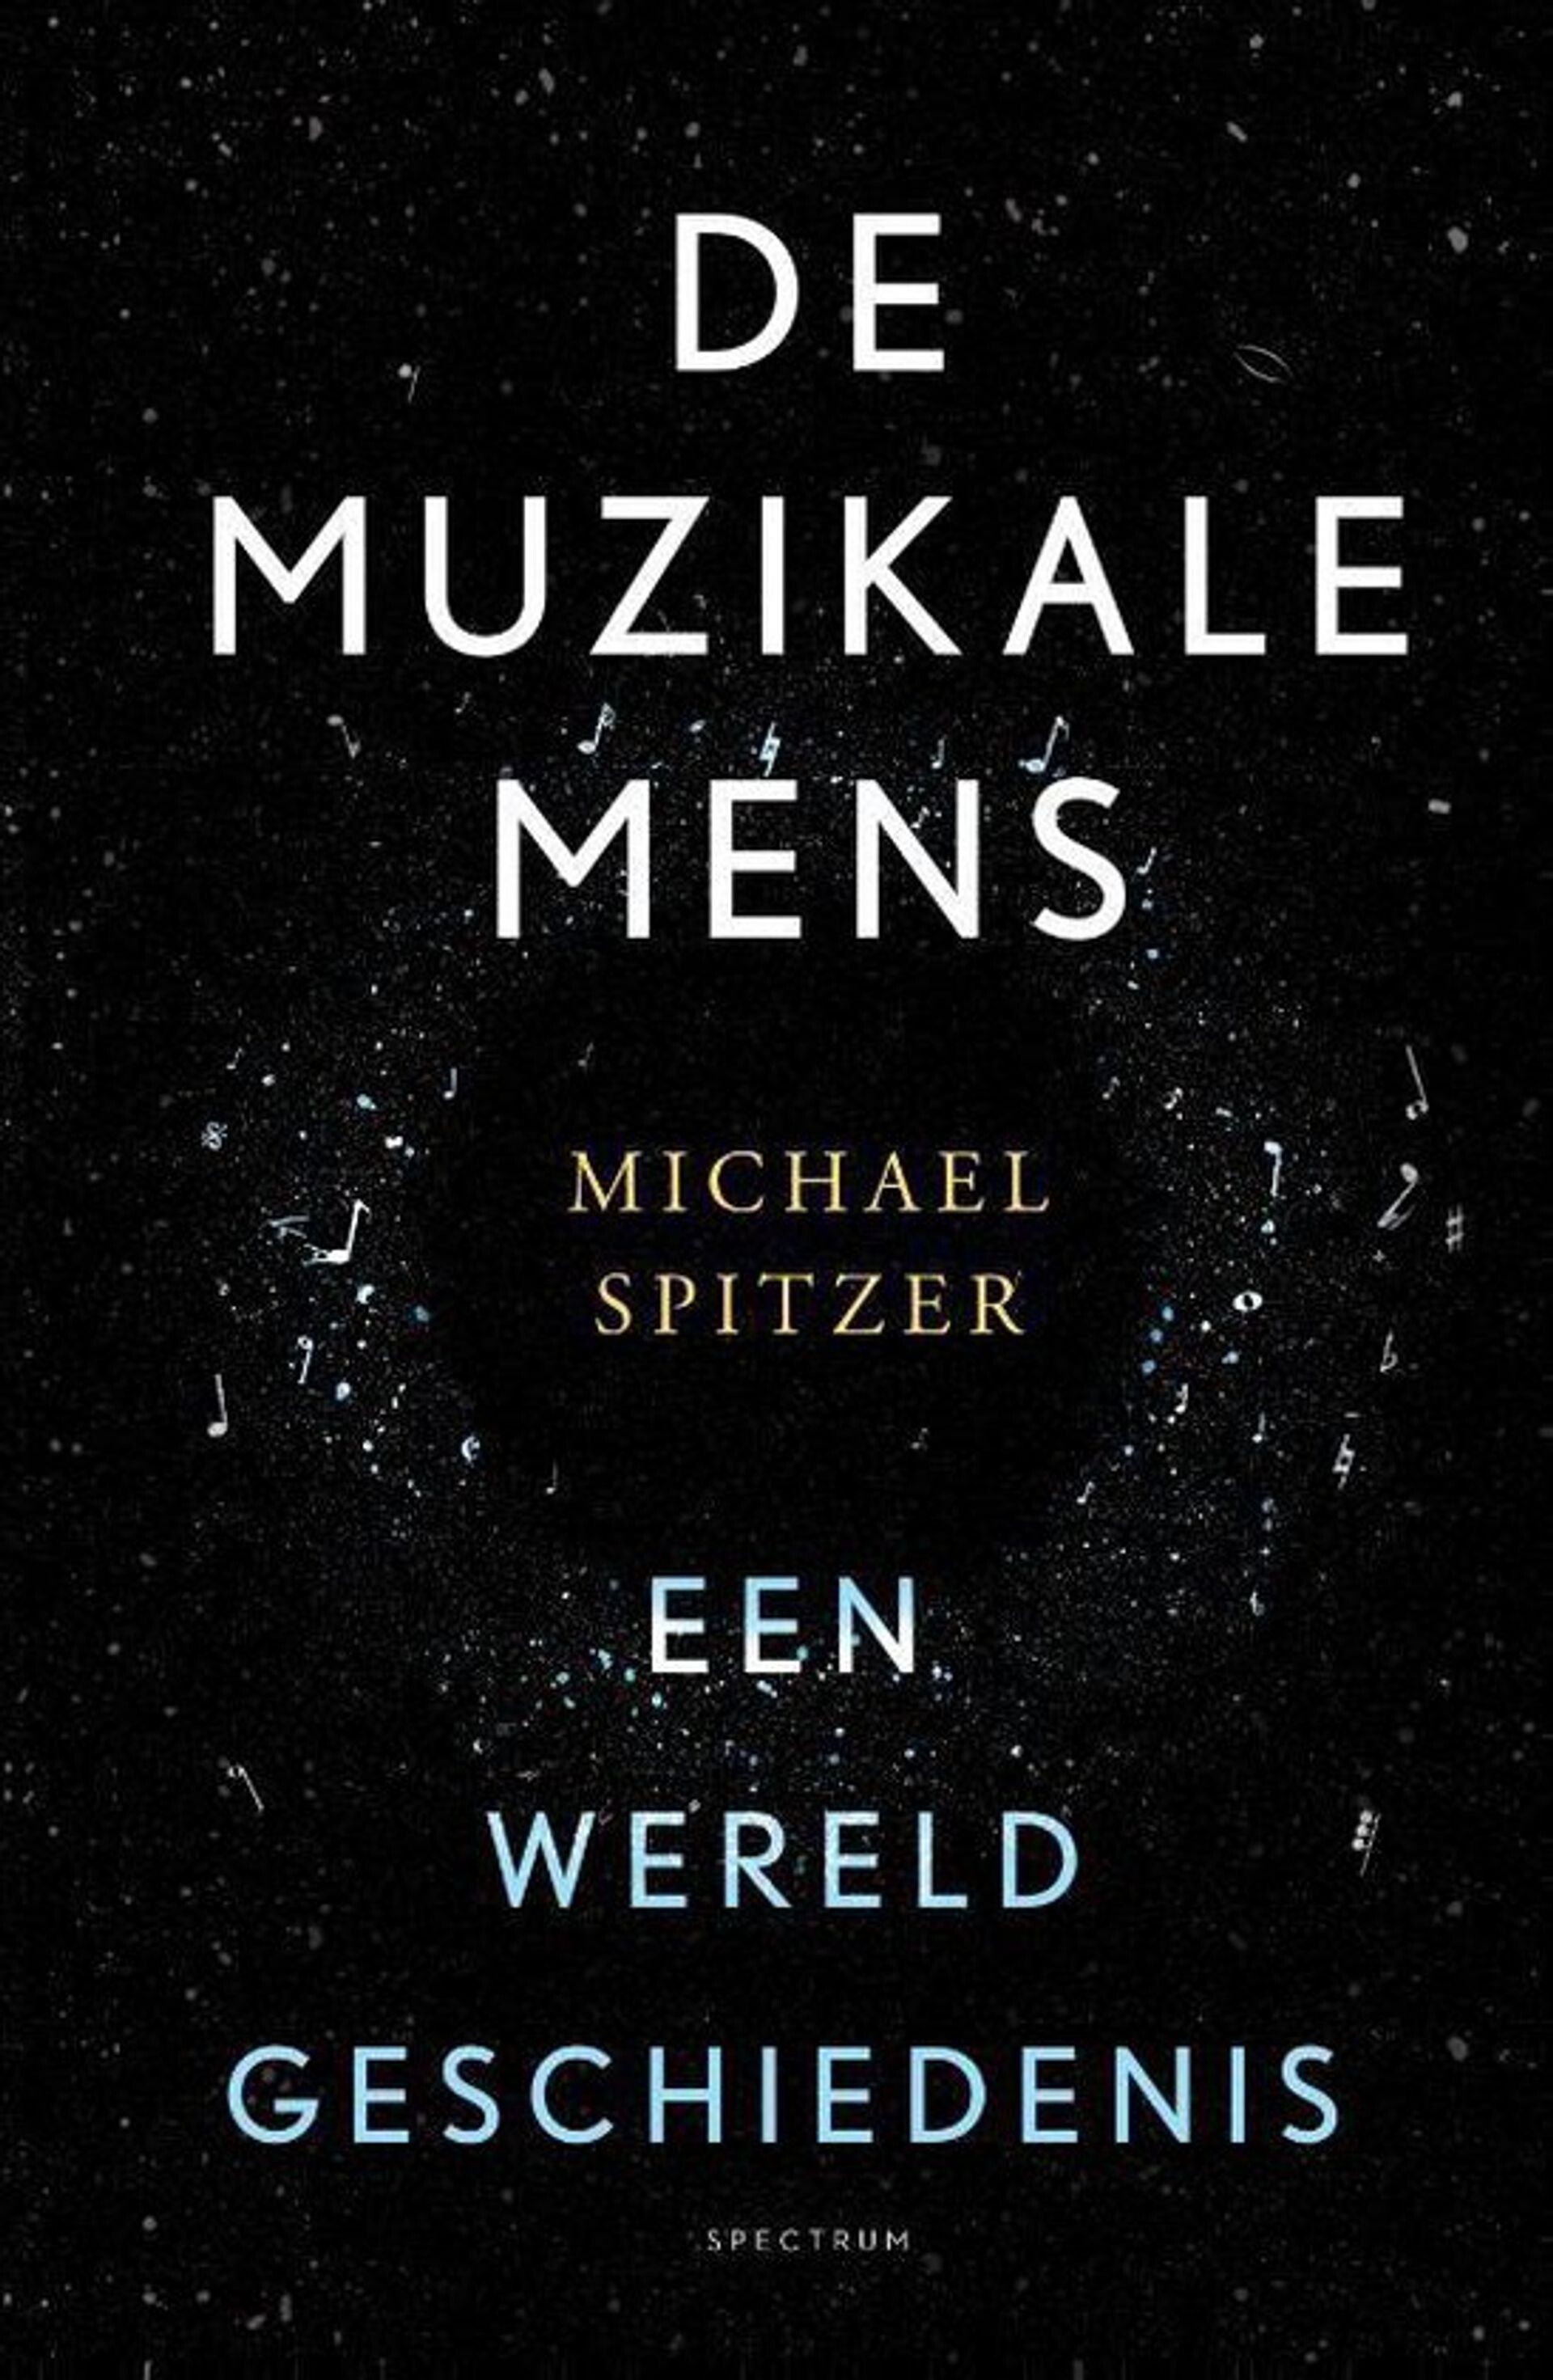 #770 - Boekrecensie: 'De muzikale mens' van Michael Spitzer